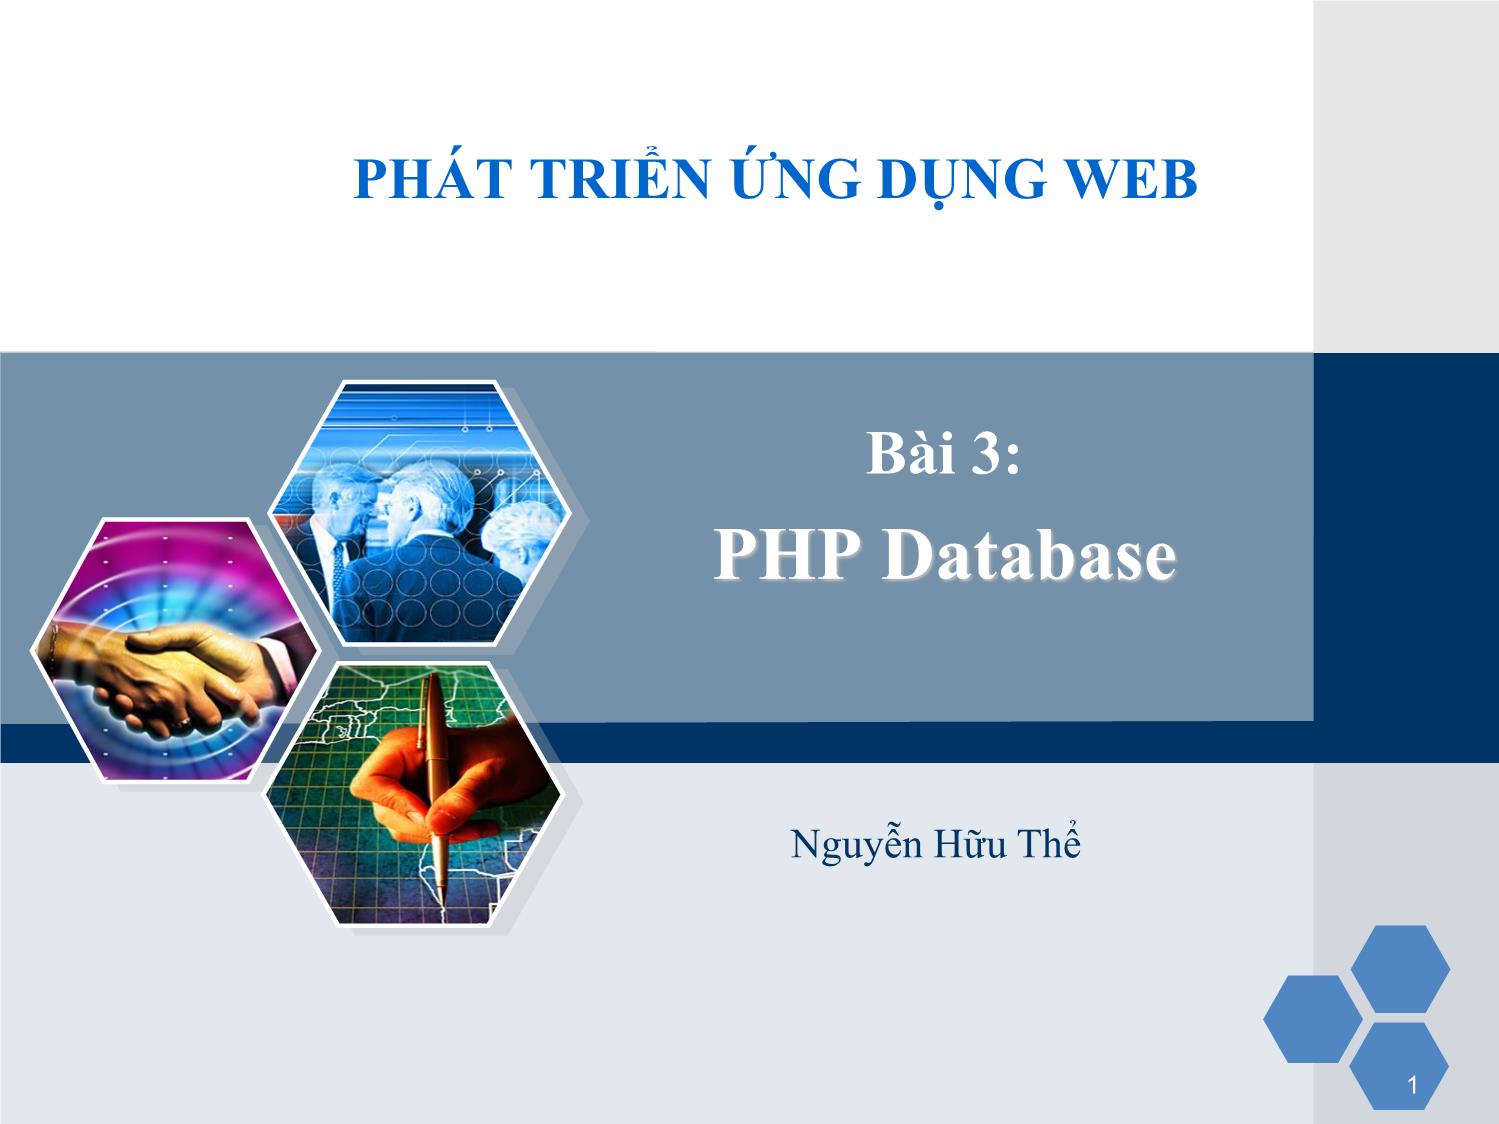 Bài giảng Phát triển ứng dụng web - Bài 3: PHP Database - Nguyễn Hữu Thể trang 1